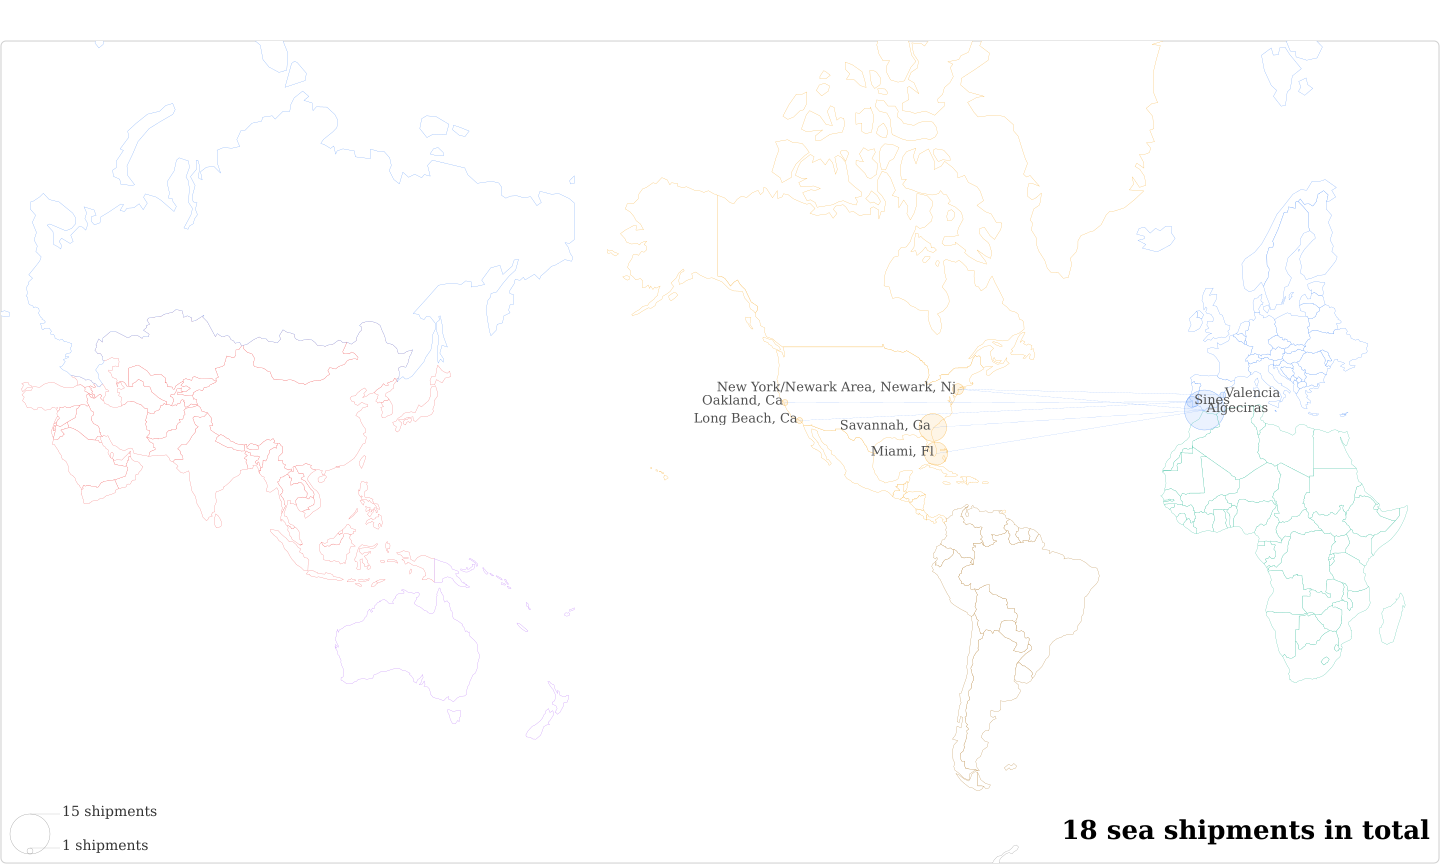 Moldes Tecnologicos Para El Hormigo's Imports Per Country Map